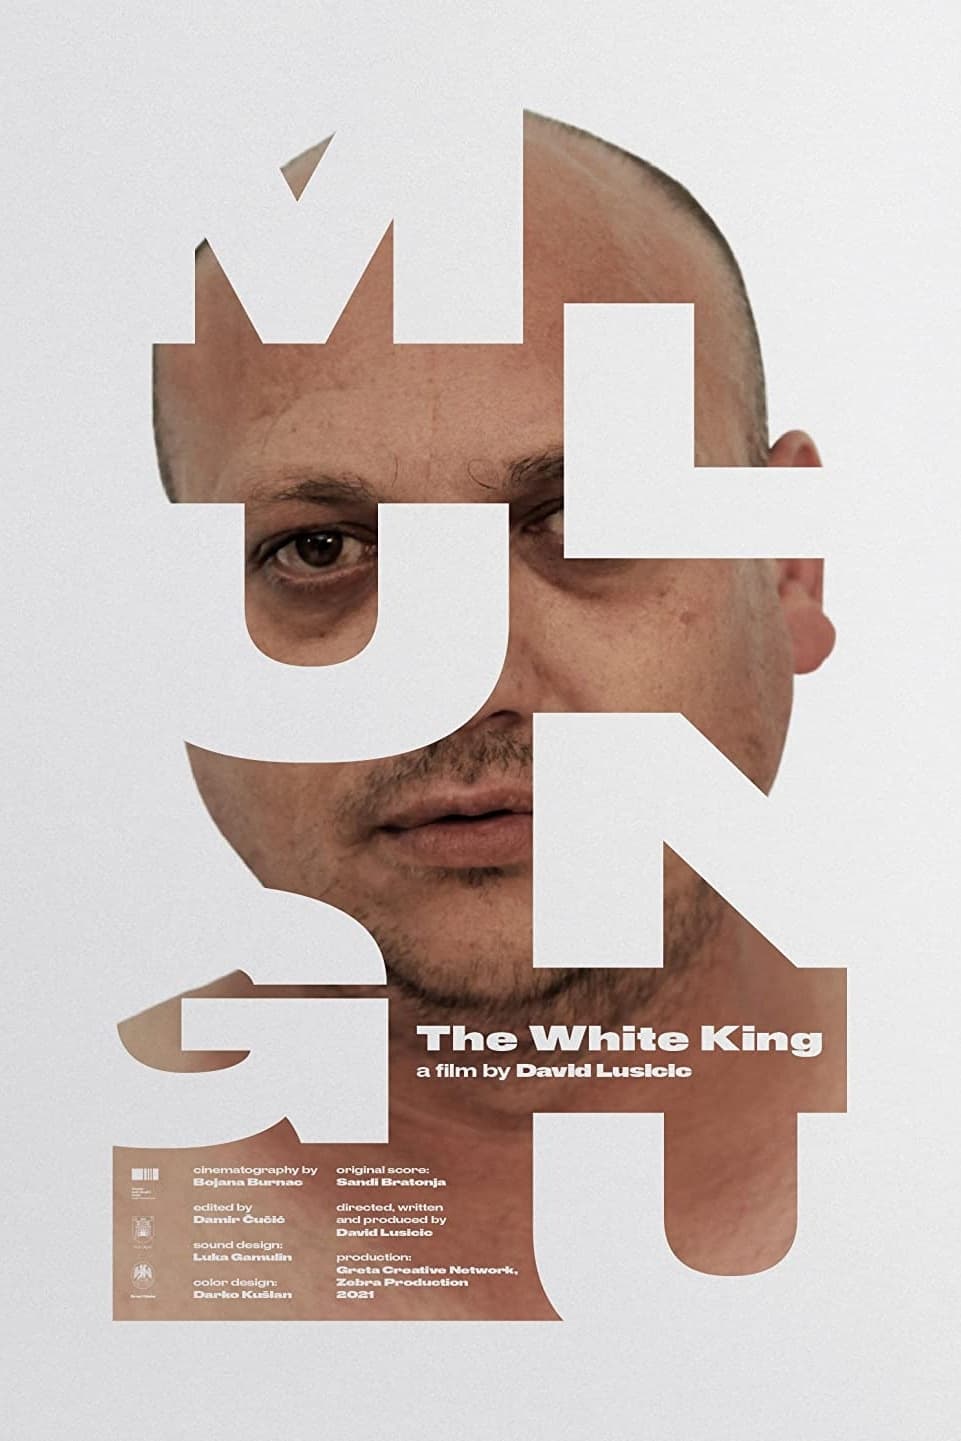 Mlungu – The White King